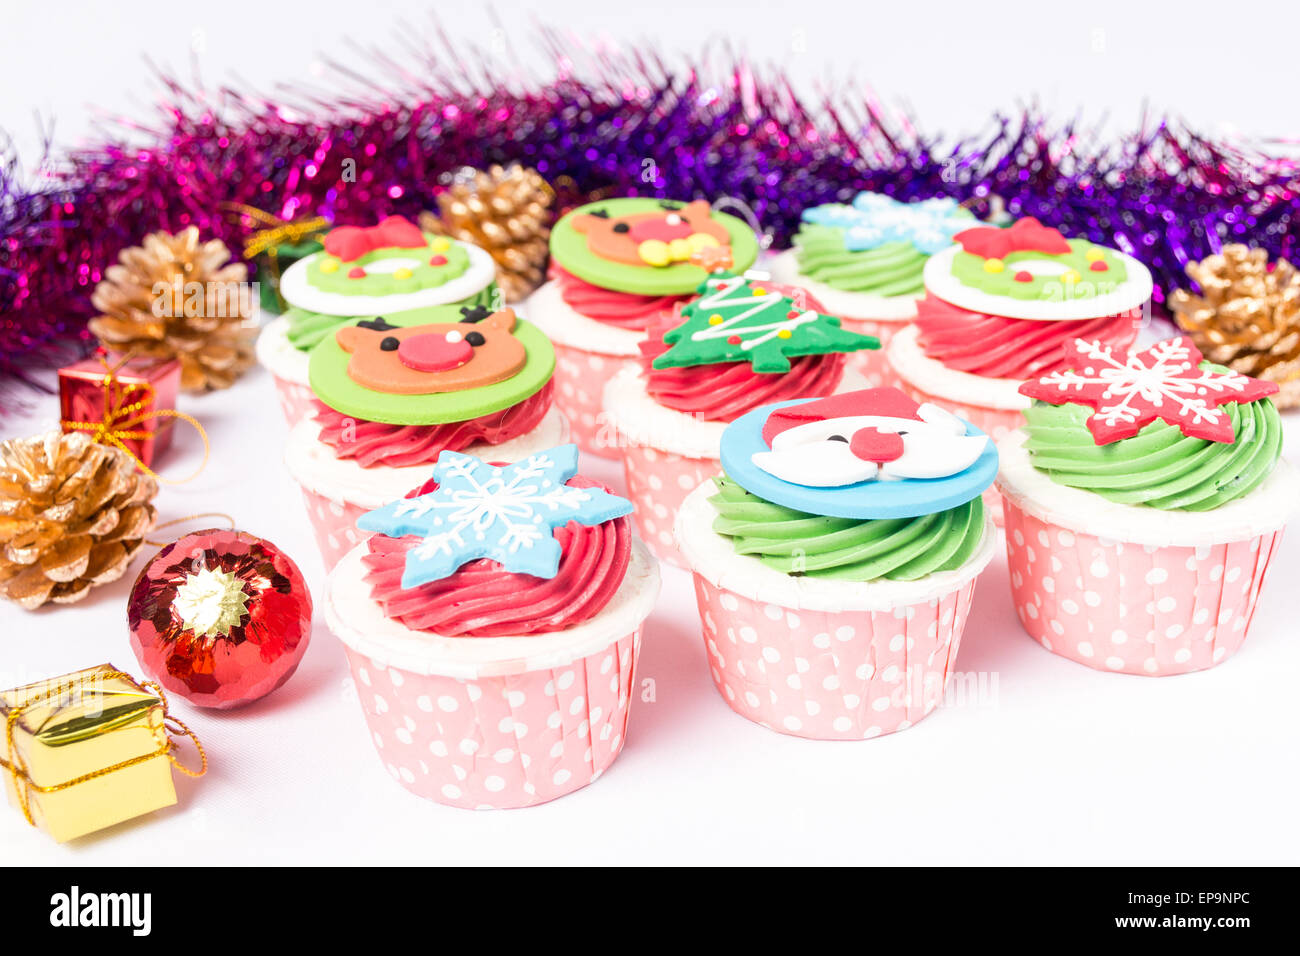 Weihnachten dekoriert cupcakes Stockfoto